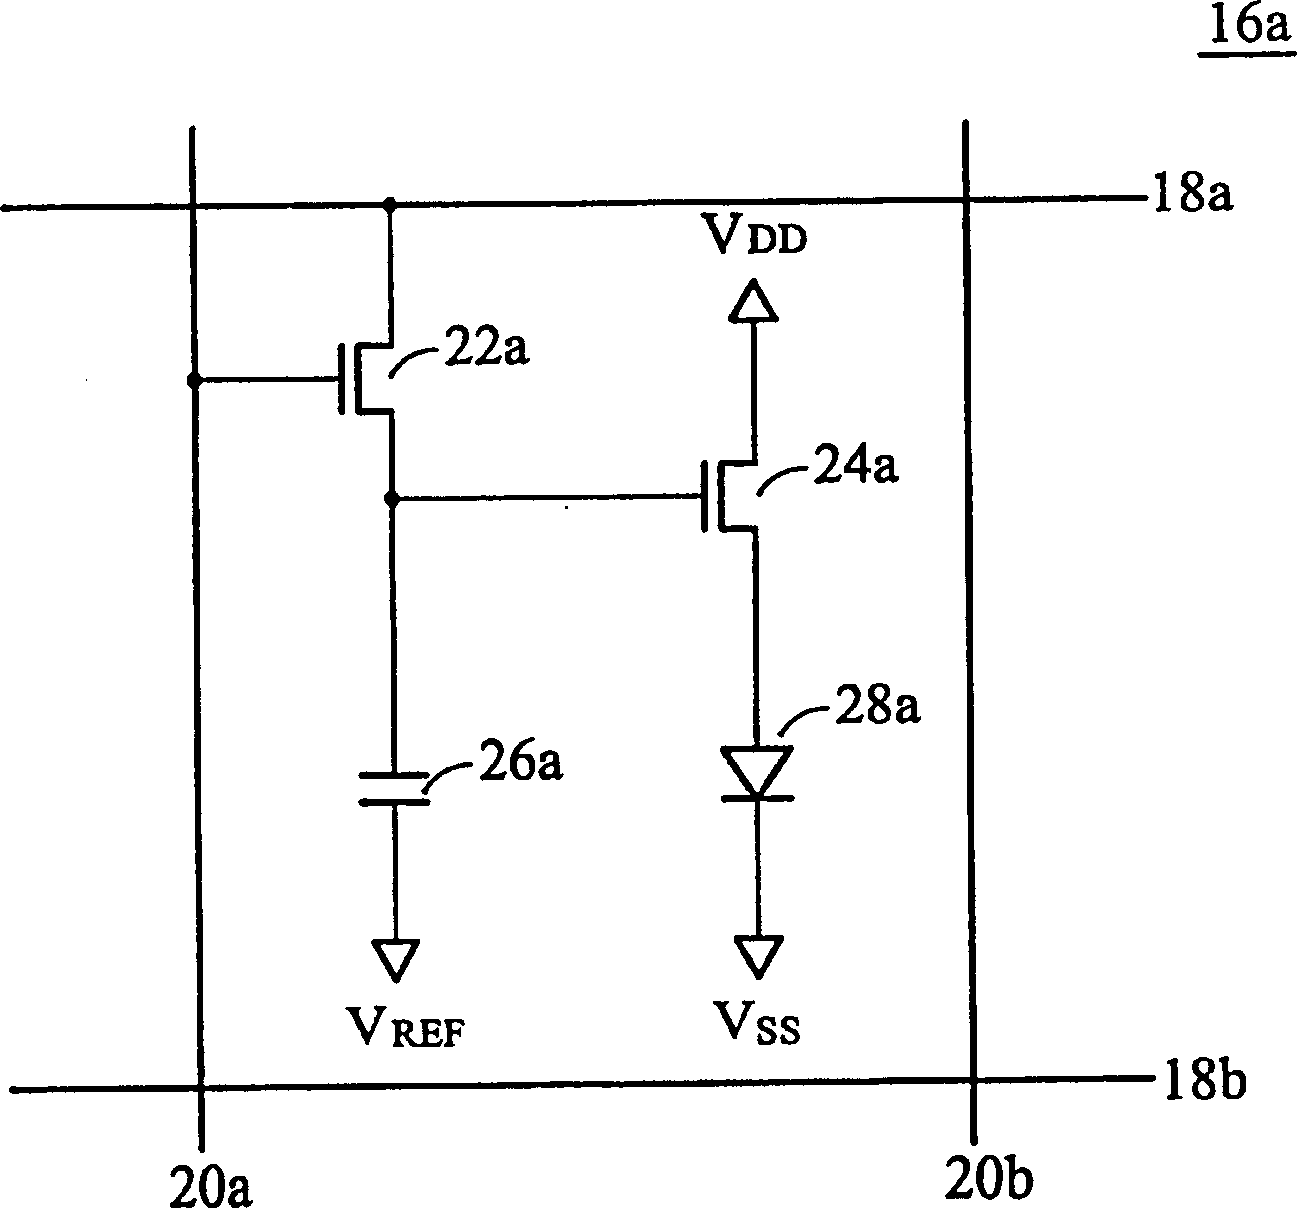 Pixel unit of organic light-emitting diode